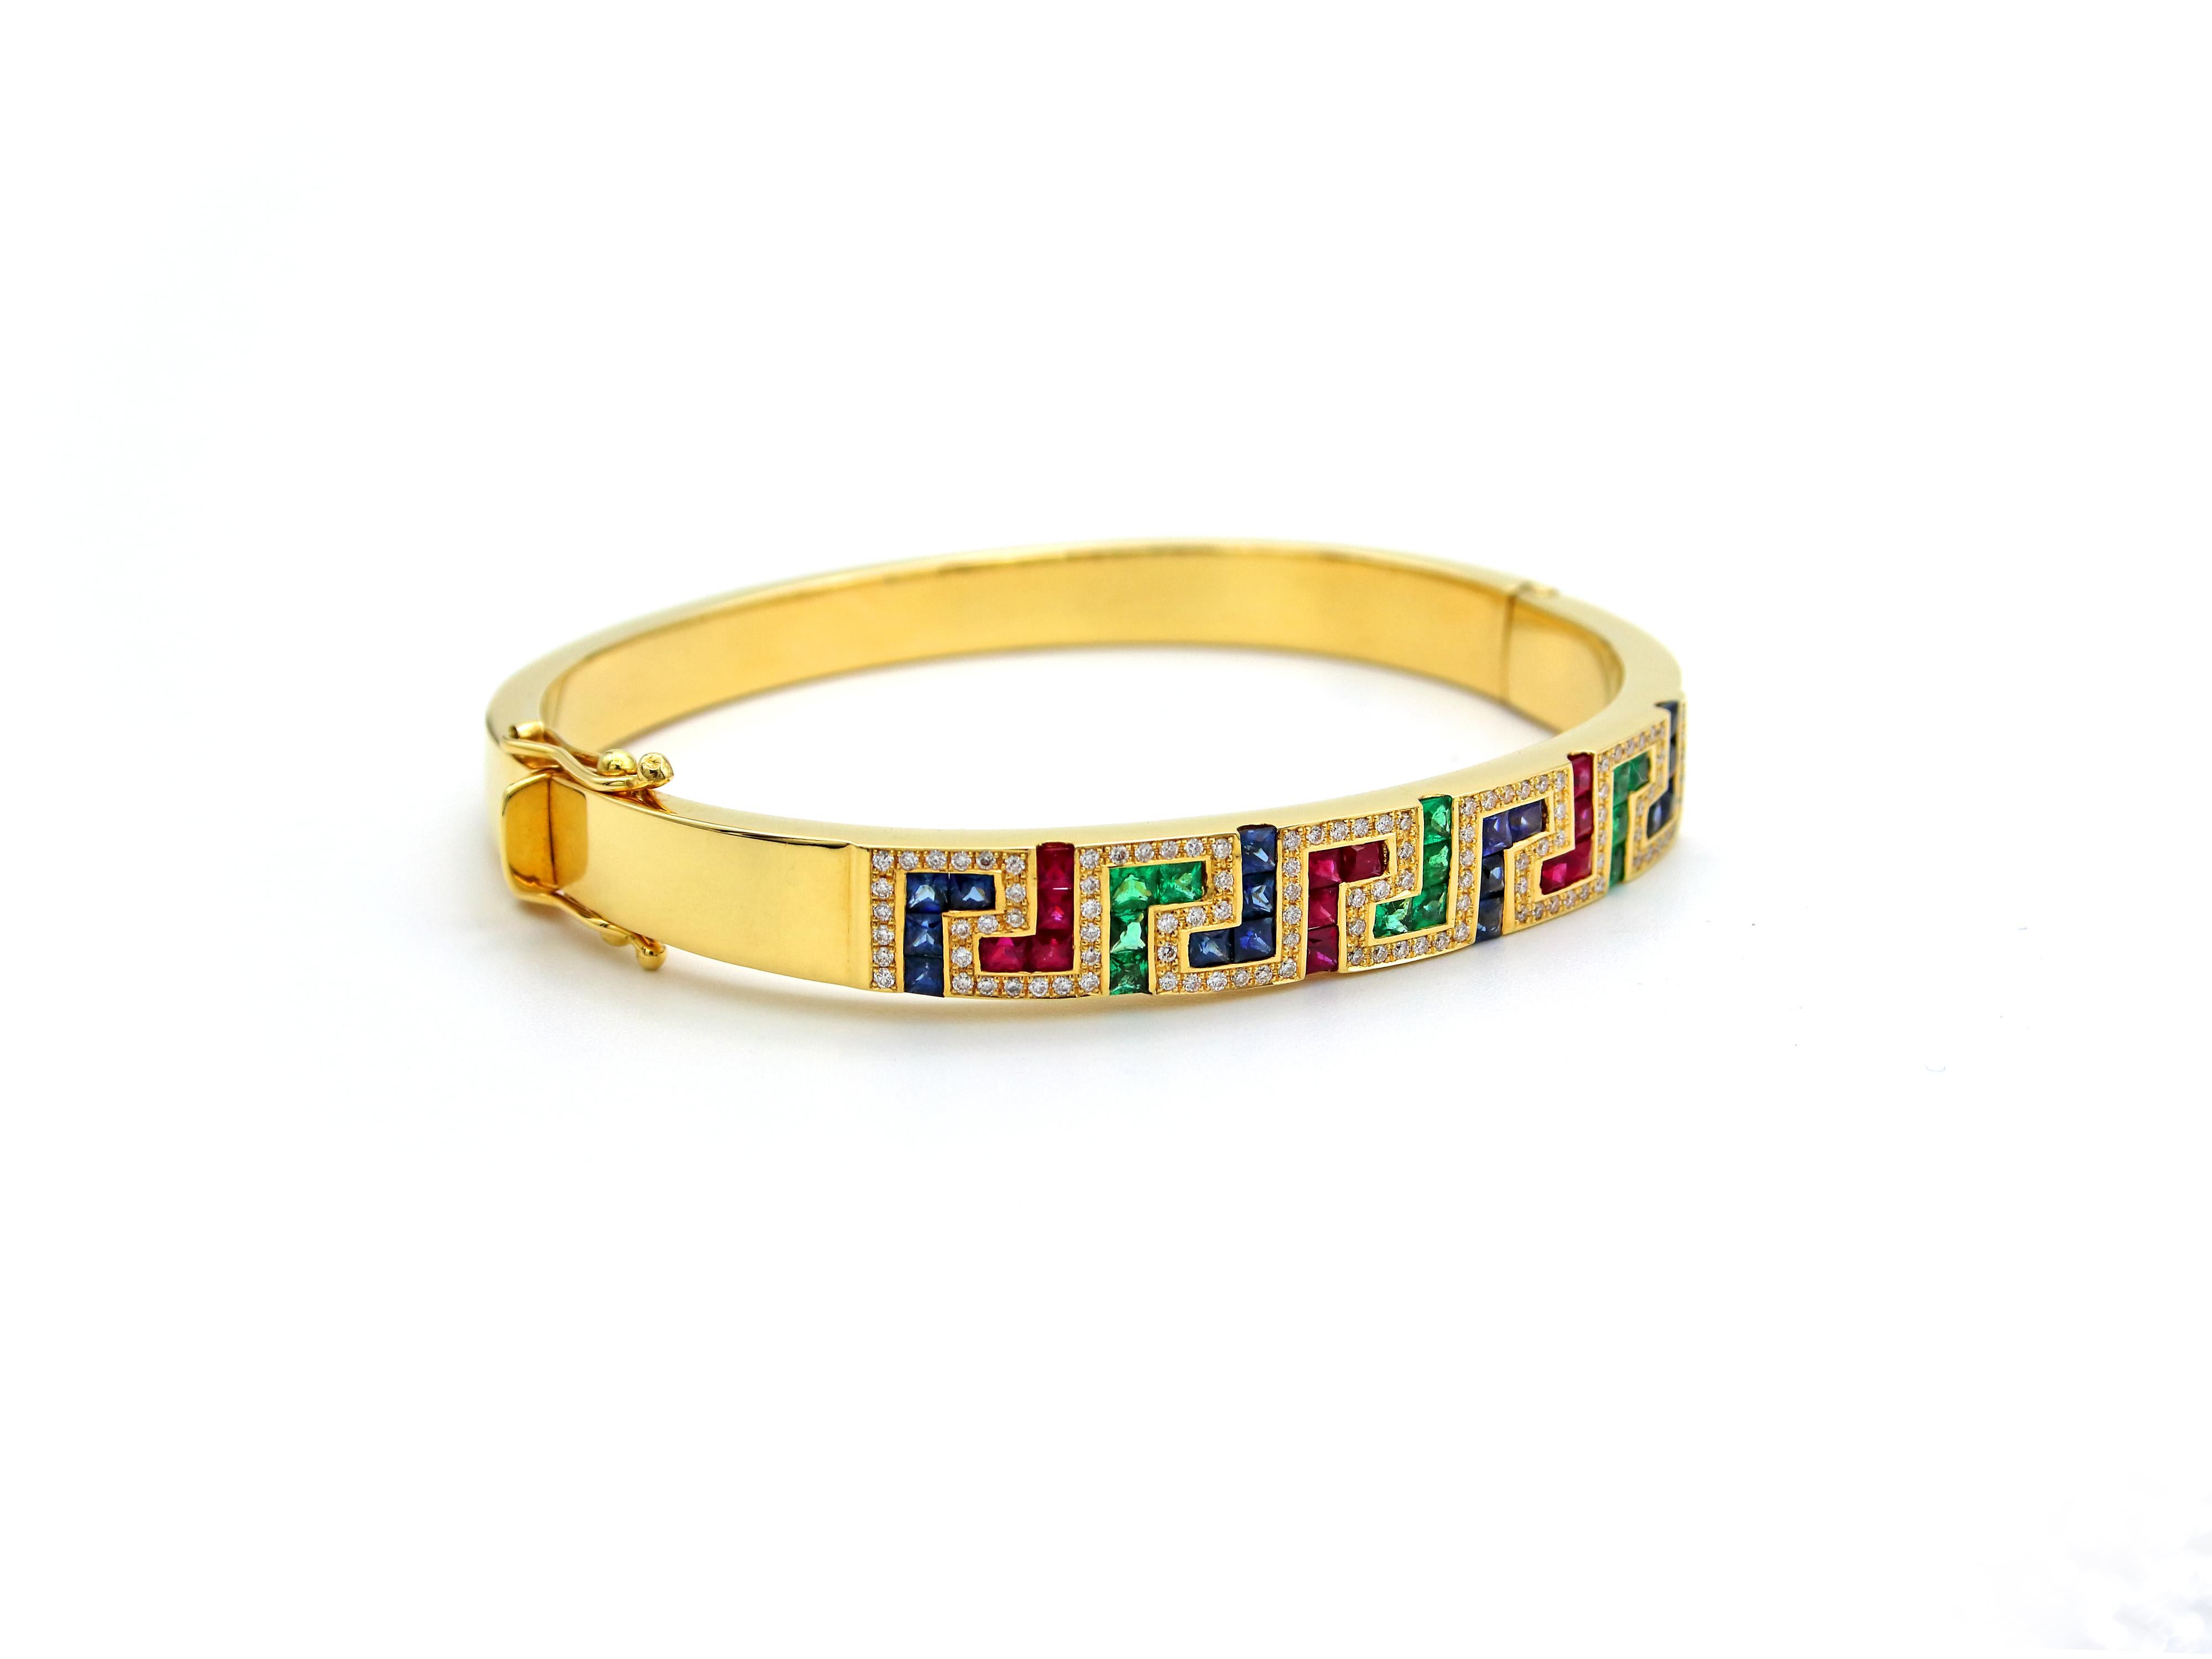 Happy Greek key collection. Dieses Armband aus 18 Karat Gelbgold ist eines der bekanntesten Designs weltweit. Erkennbar an seinem griechischen Ursprung, aber auch als Symbol des langen Lebens bekannt. Die technische Bezeichnung dafür lautet Mäander.